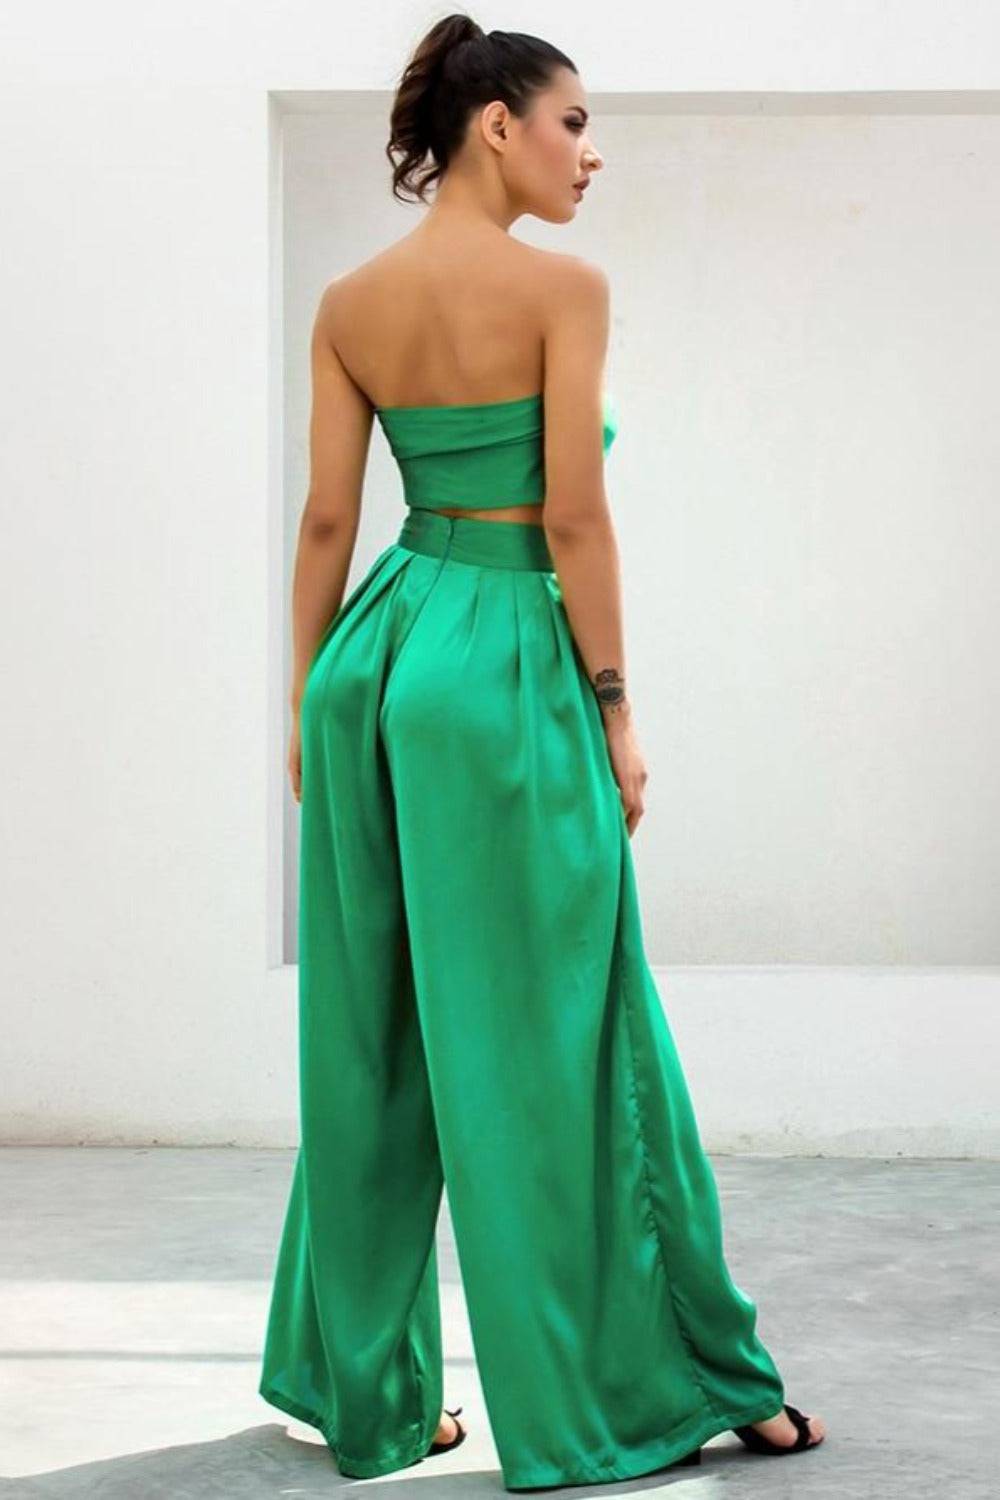 Emerald Green Strapless Wide Leg Pants Jumpsuit Set - TGC Boutique - 2 Piece Set